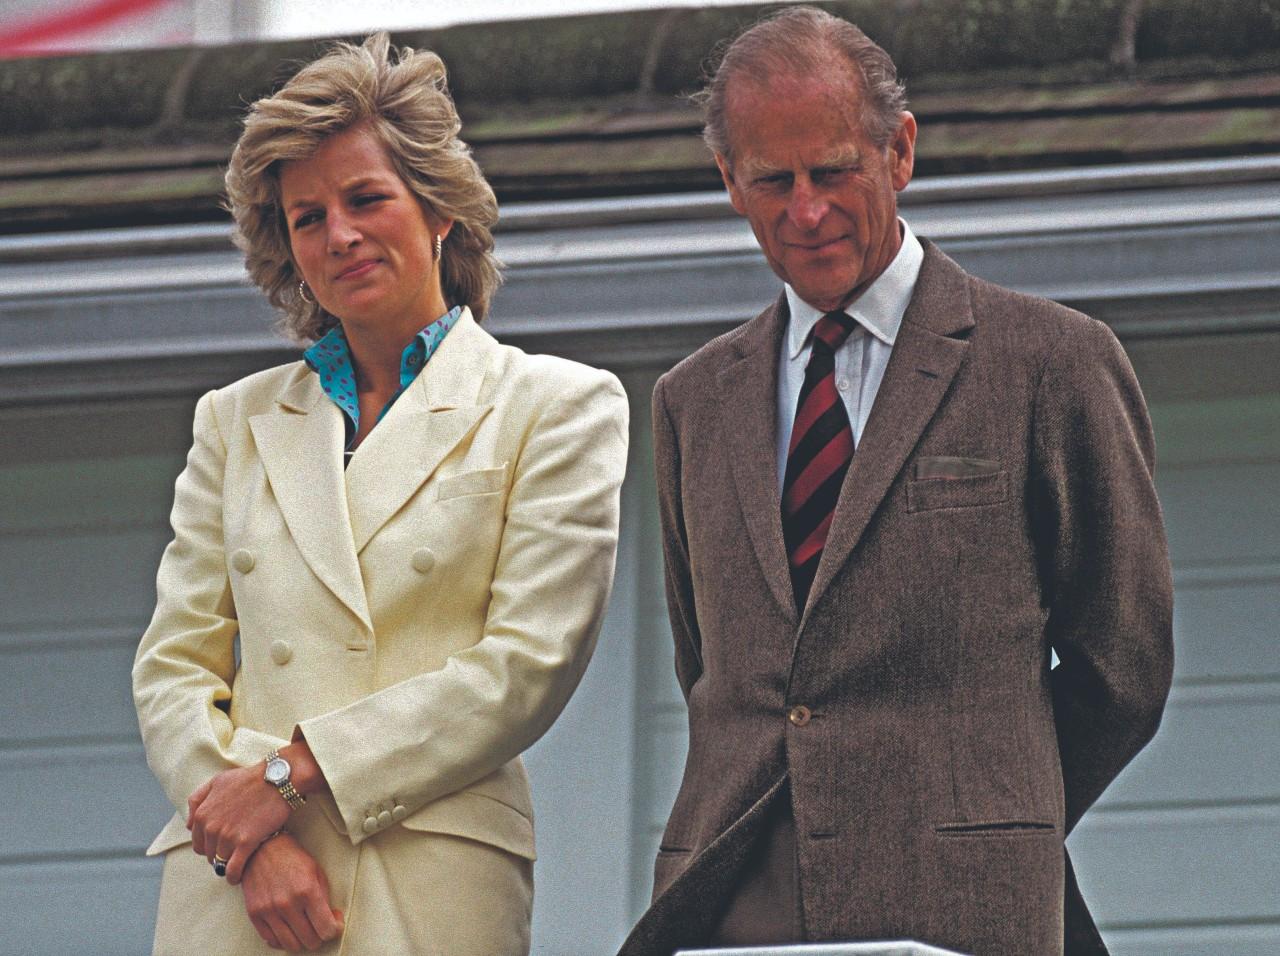 1987. Felipe de Edimburgo en un torneo de polo junto a Diana, la princesa de Gales.